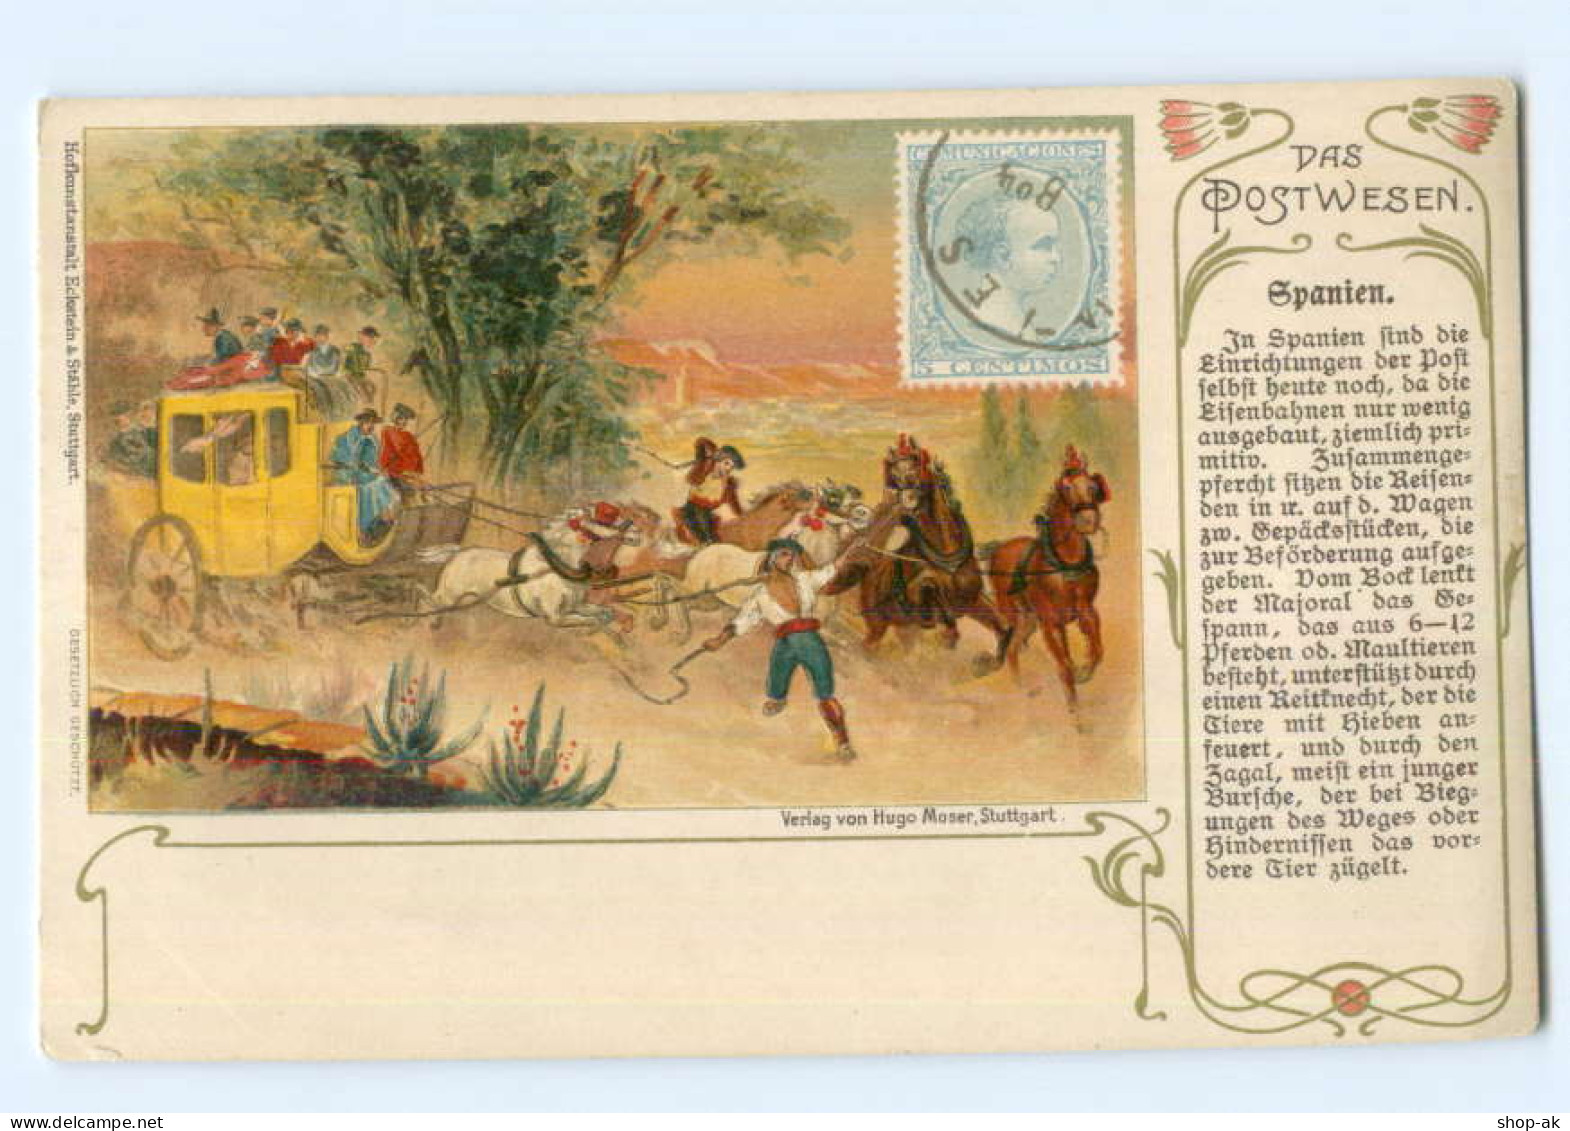 T7572/ Das Postwesen   Spanien   Postkutsche Litho Ak  Ca.1900 - Post